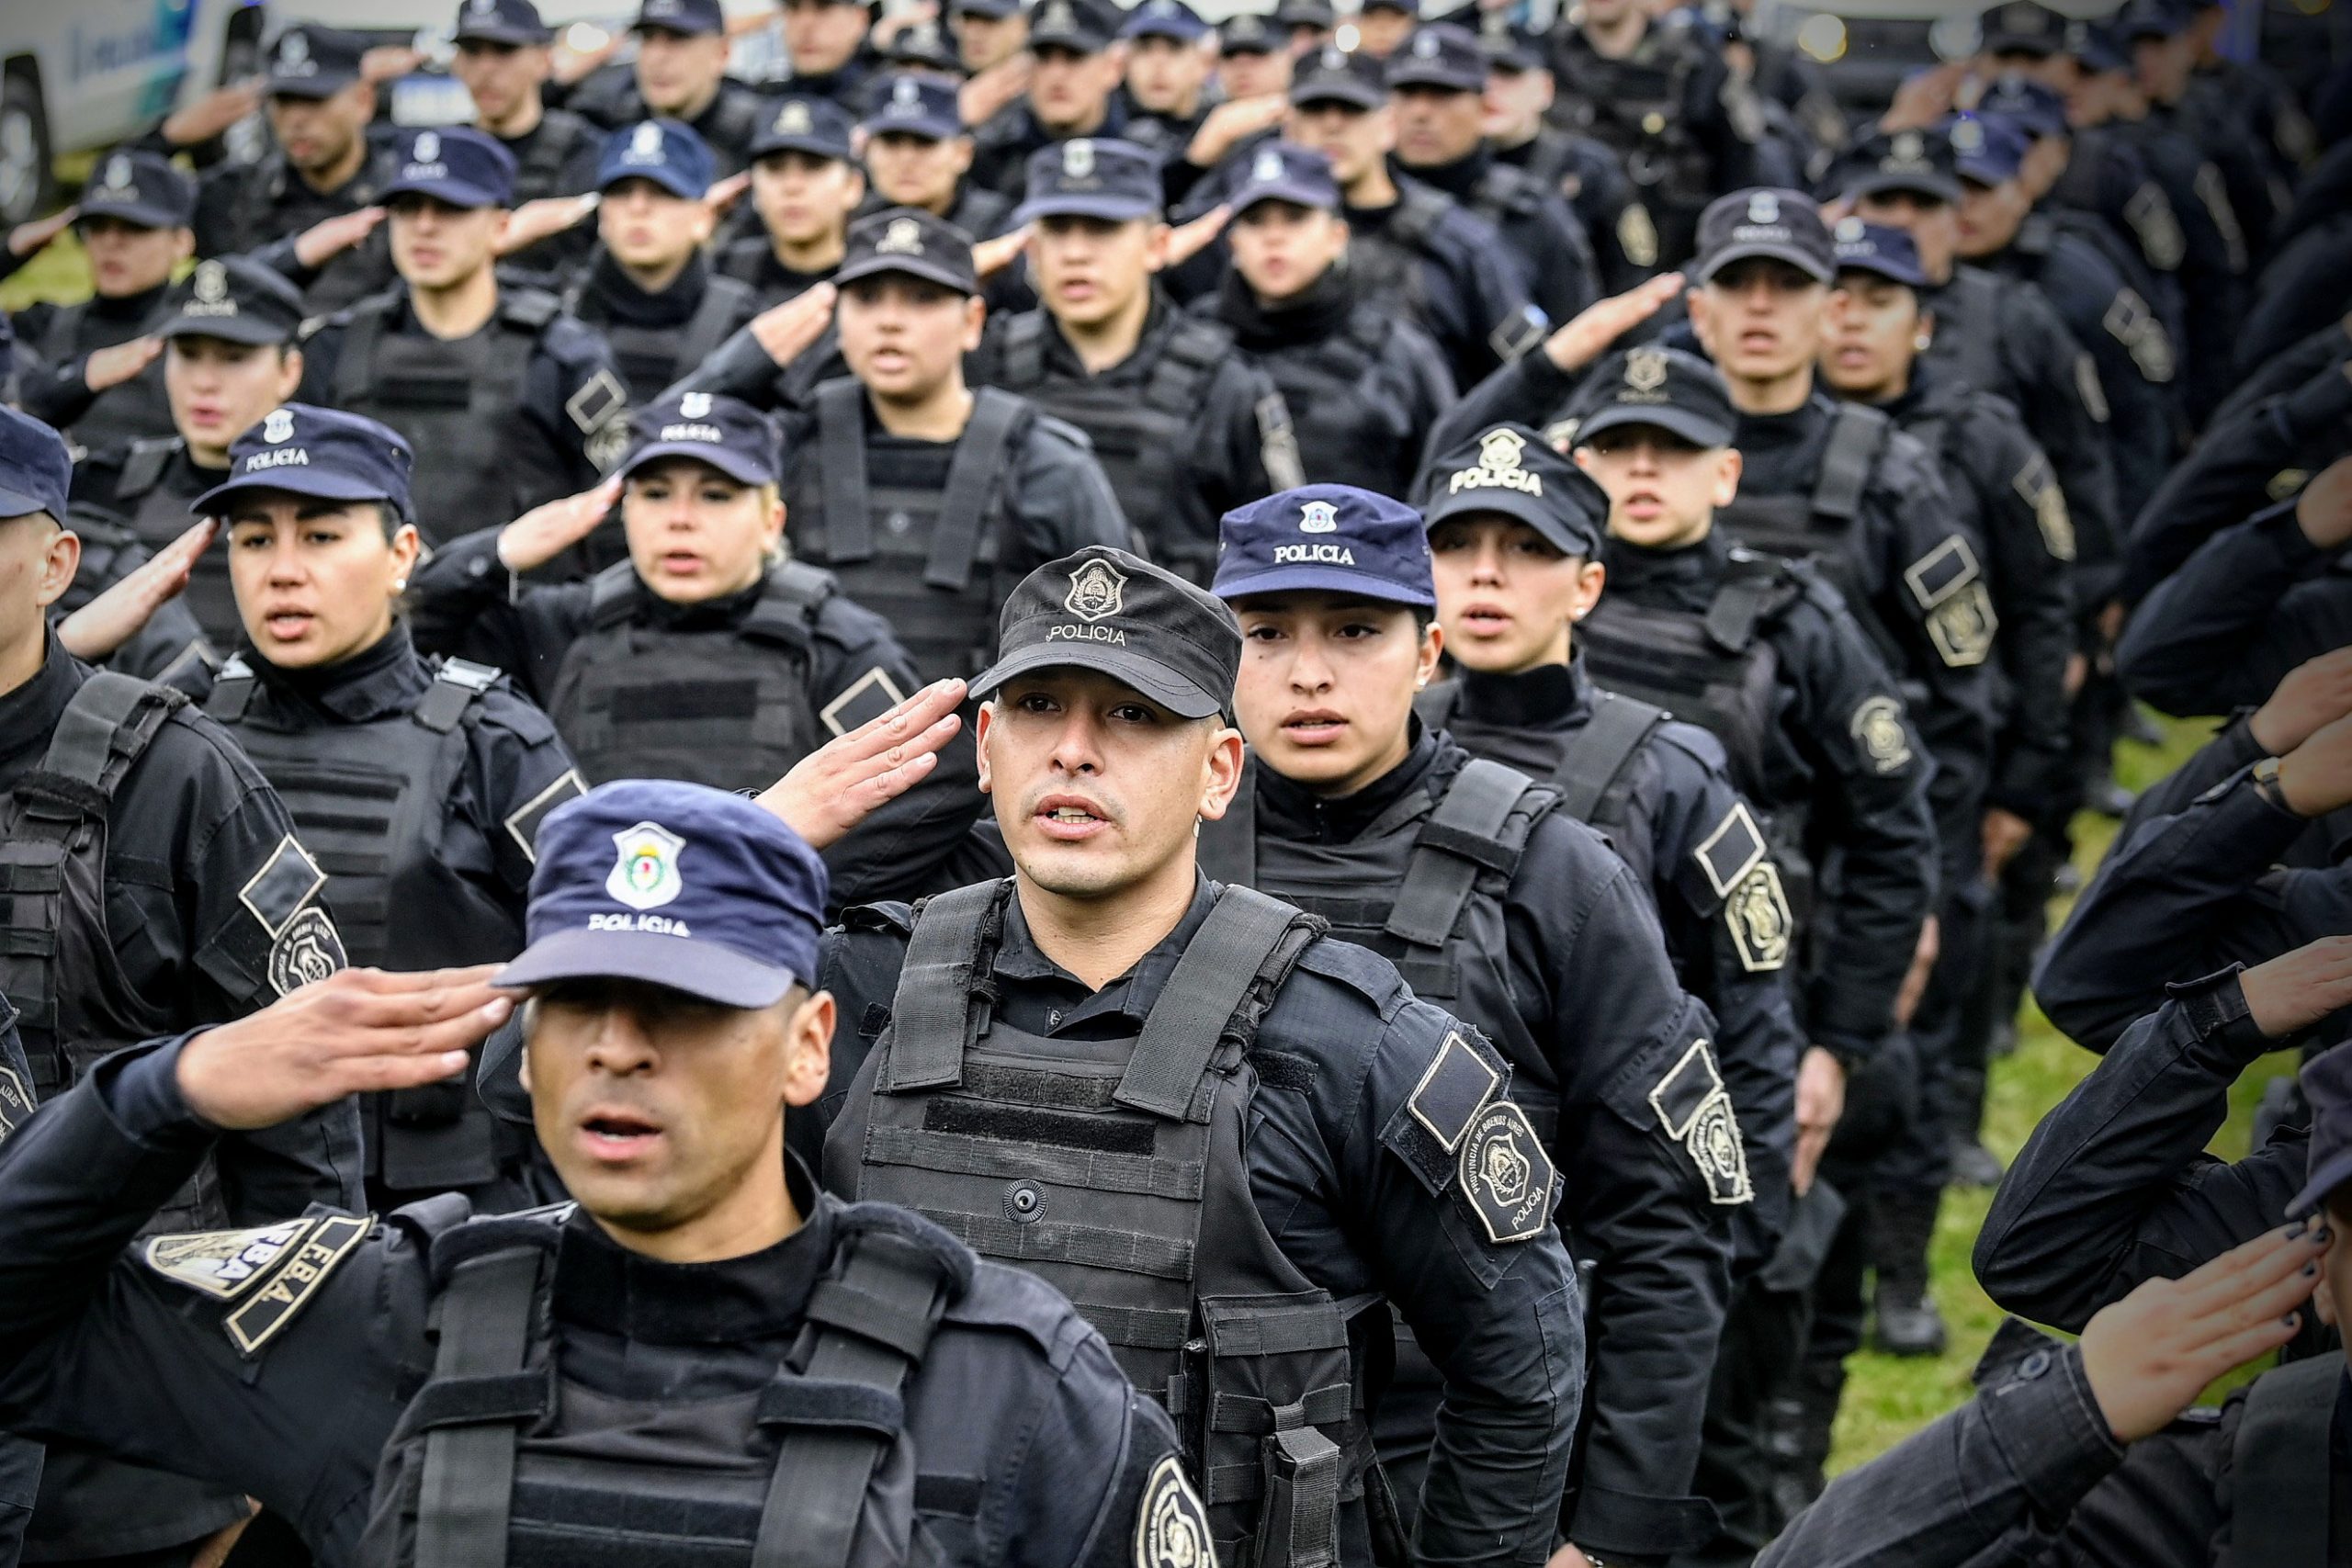 Policía Bonaerense: En lo que va del año, 18 oficiales se quitaron la vida 